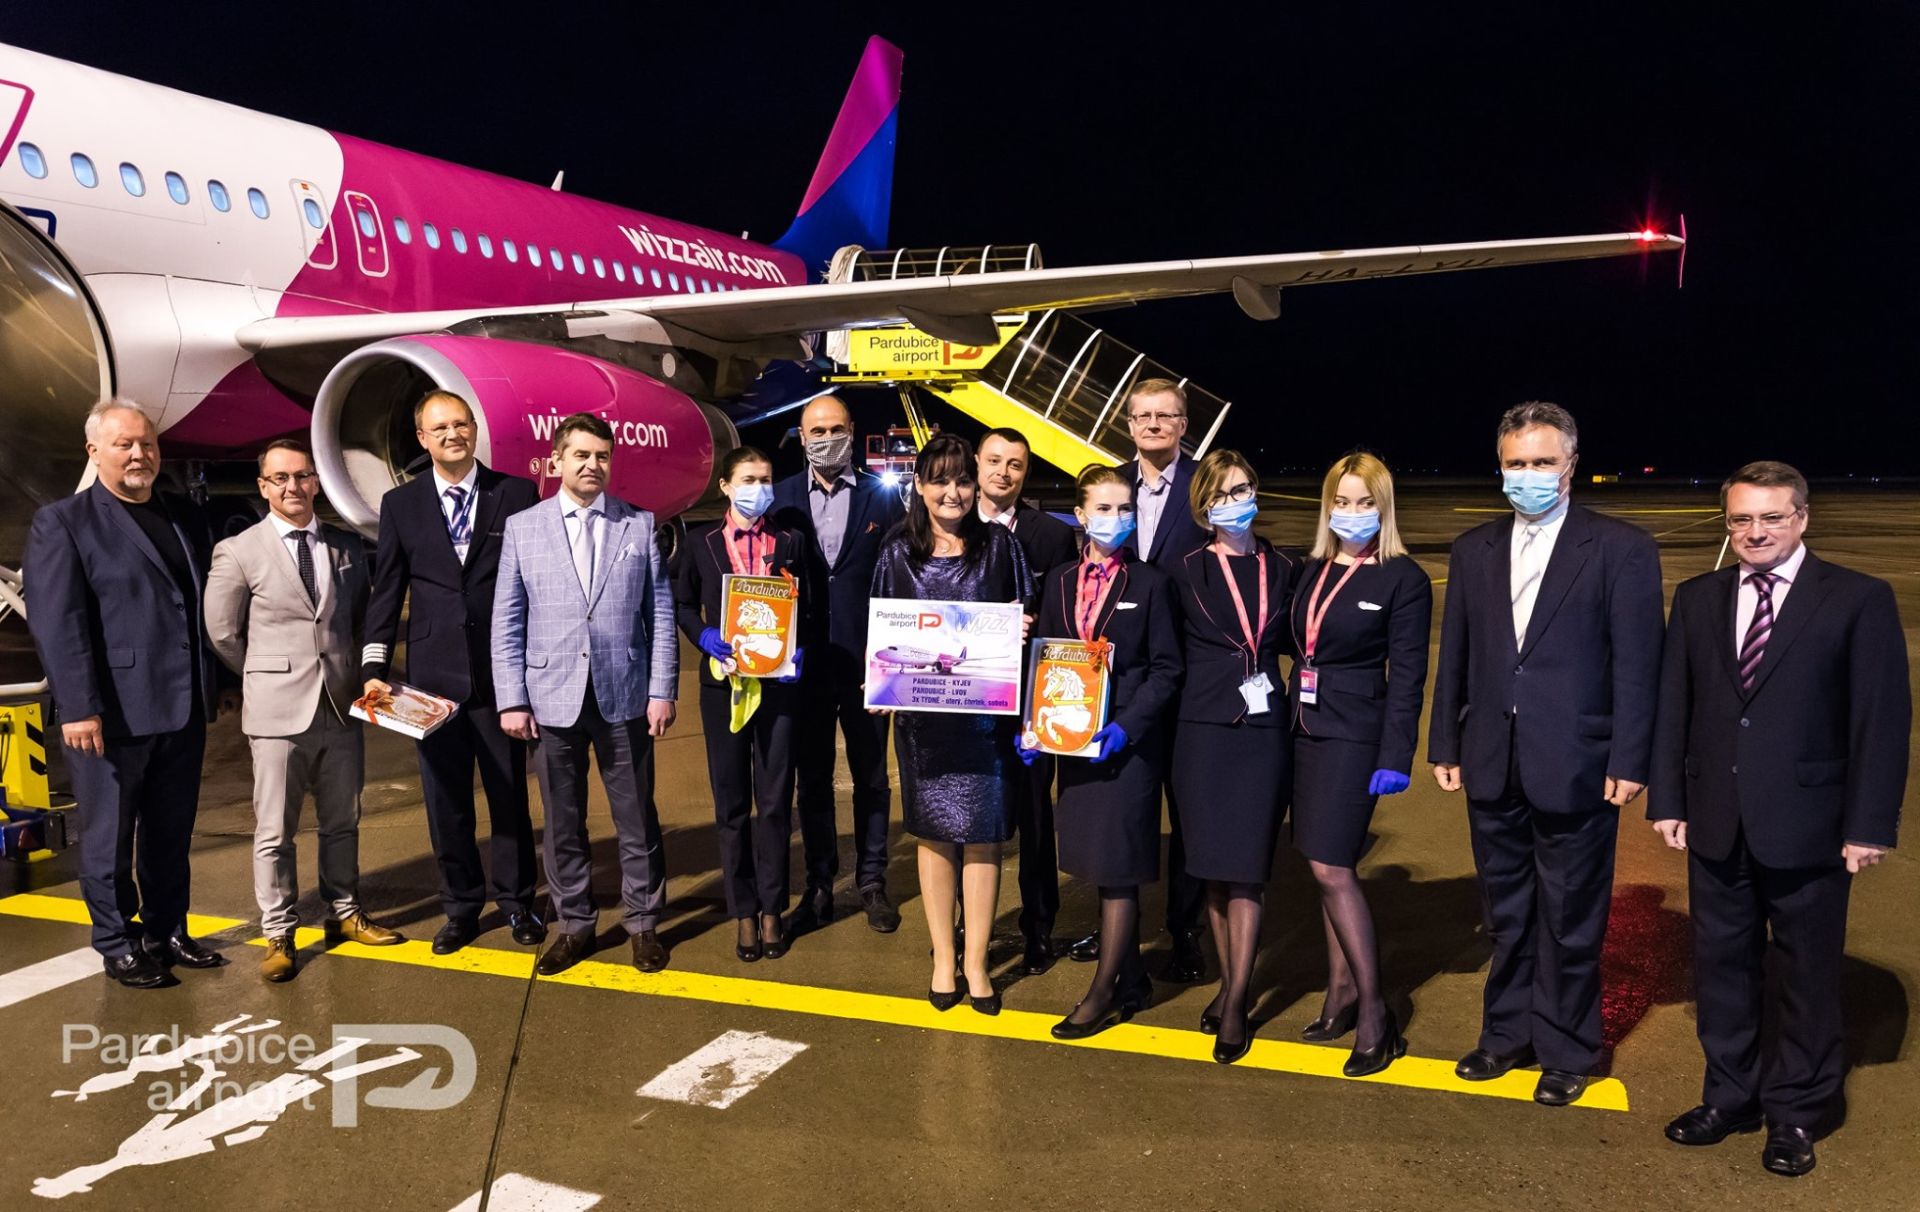 Vítání nové linky Wizz Air v Pardubicích. Foto: Letiště Pardubice